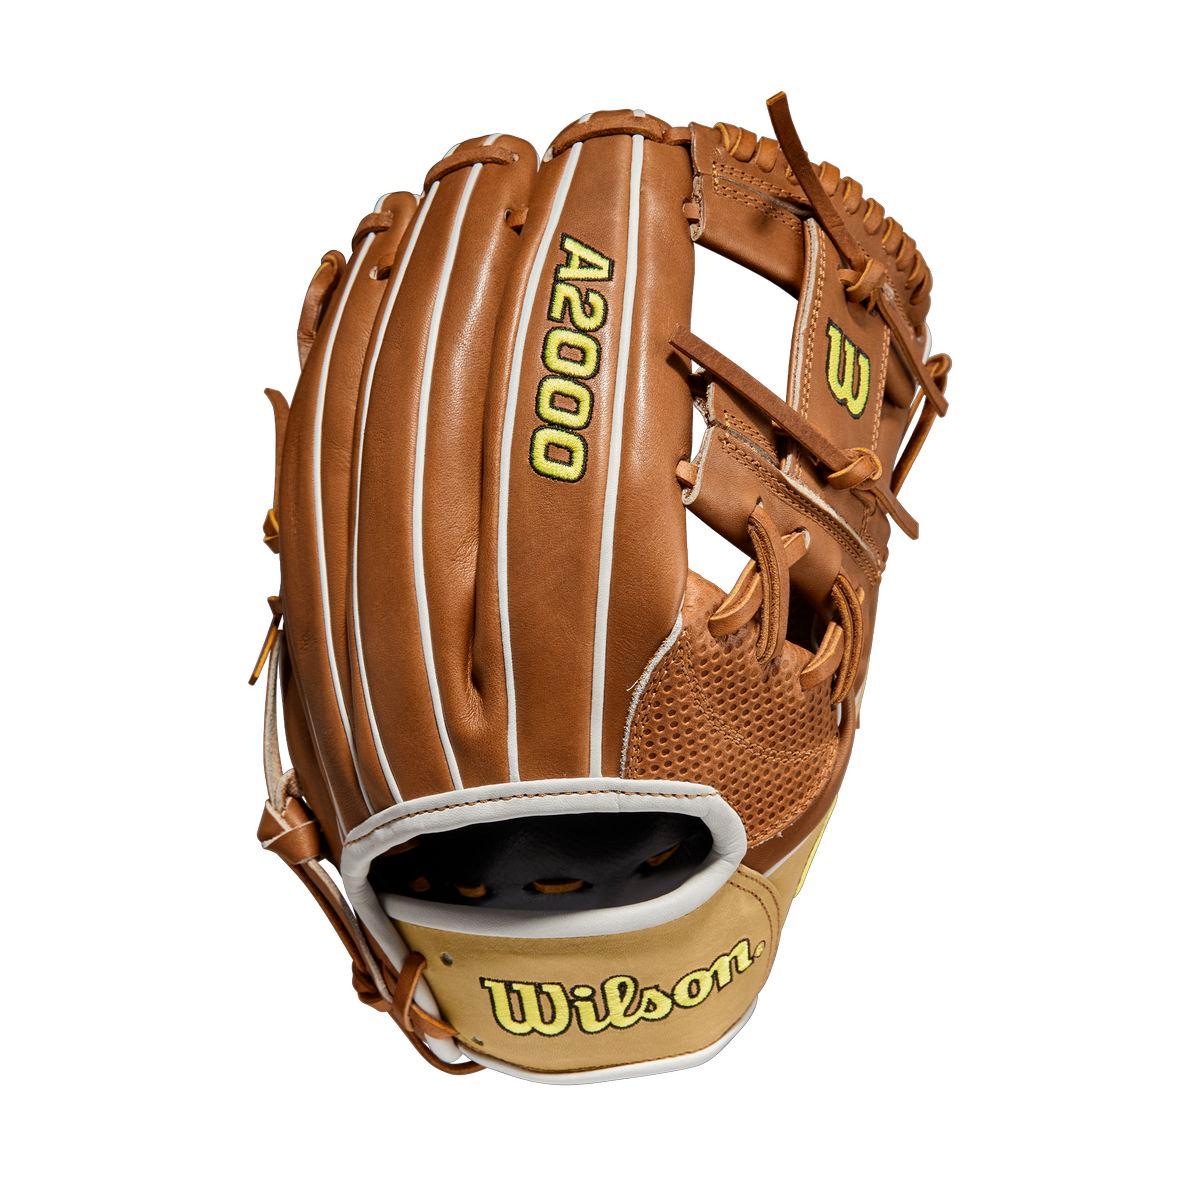 A2000 1787SC 11.75" Senior Baseball Glove - Sports Excellence